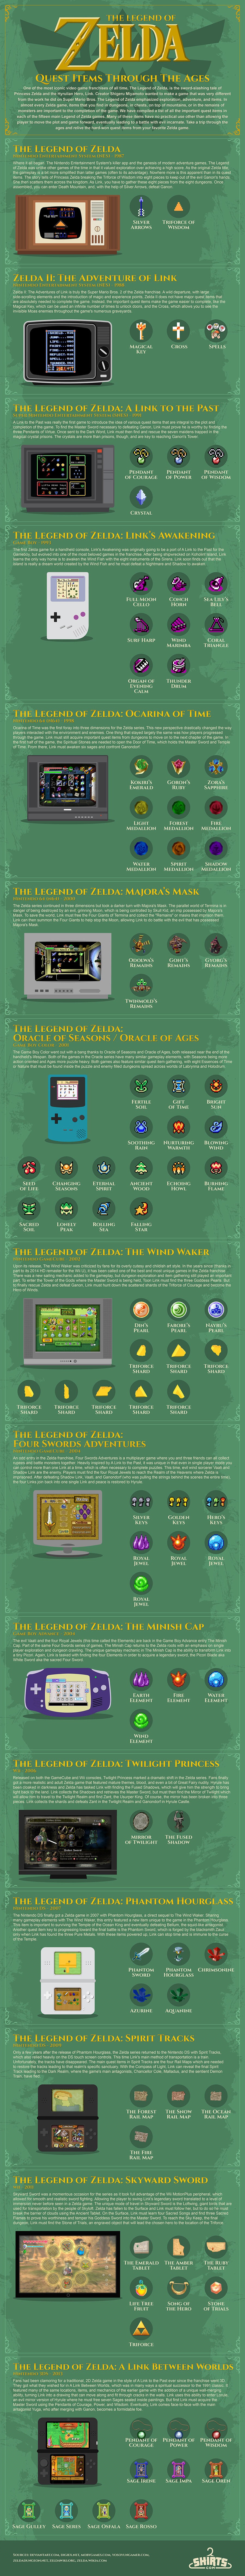 Zelda Infographic